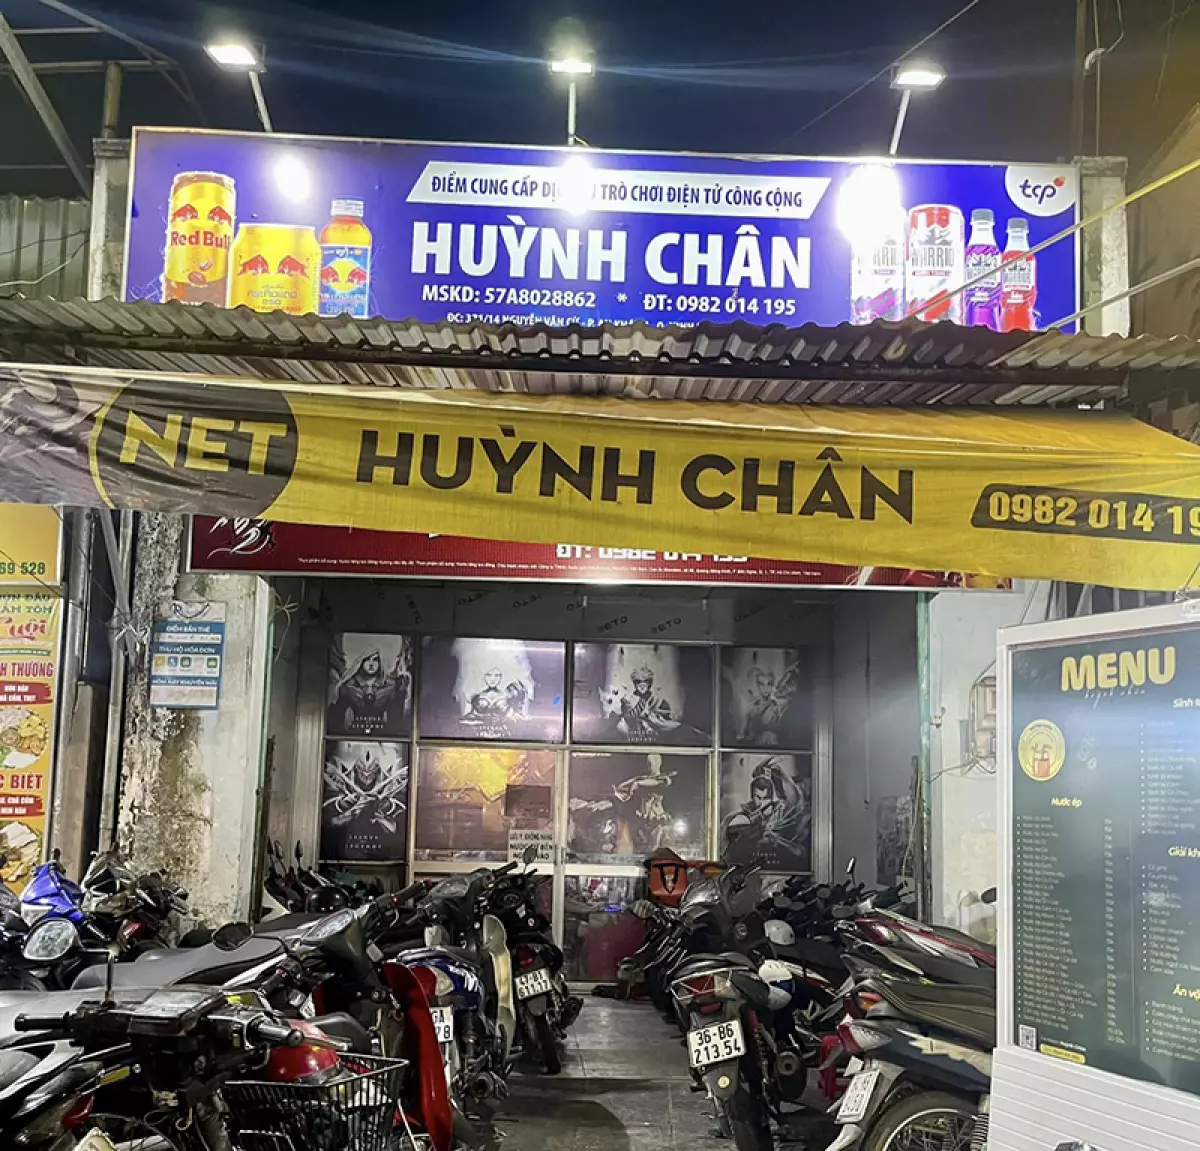 Net Huỳnh Chân